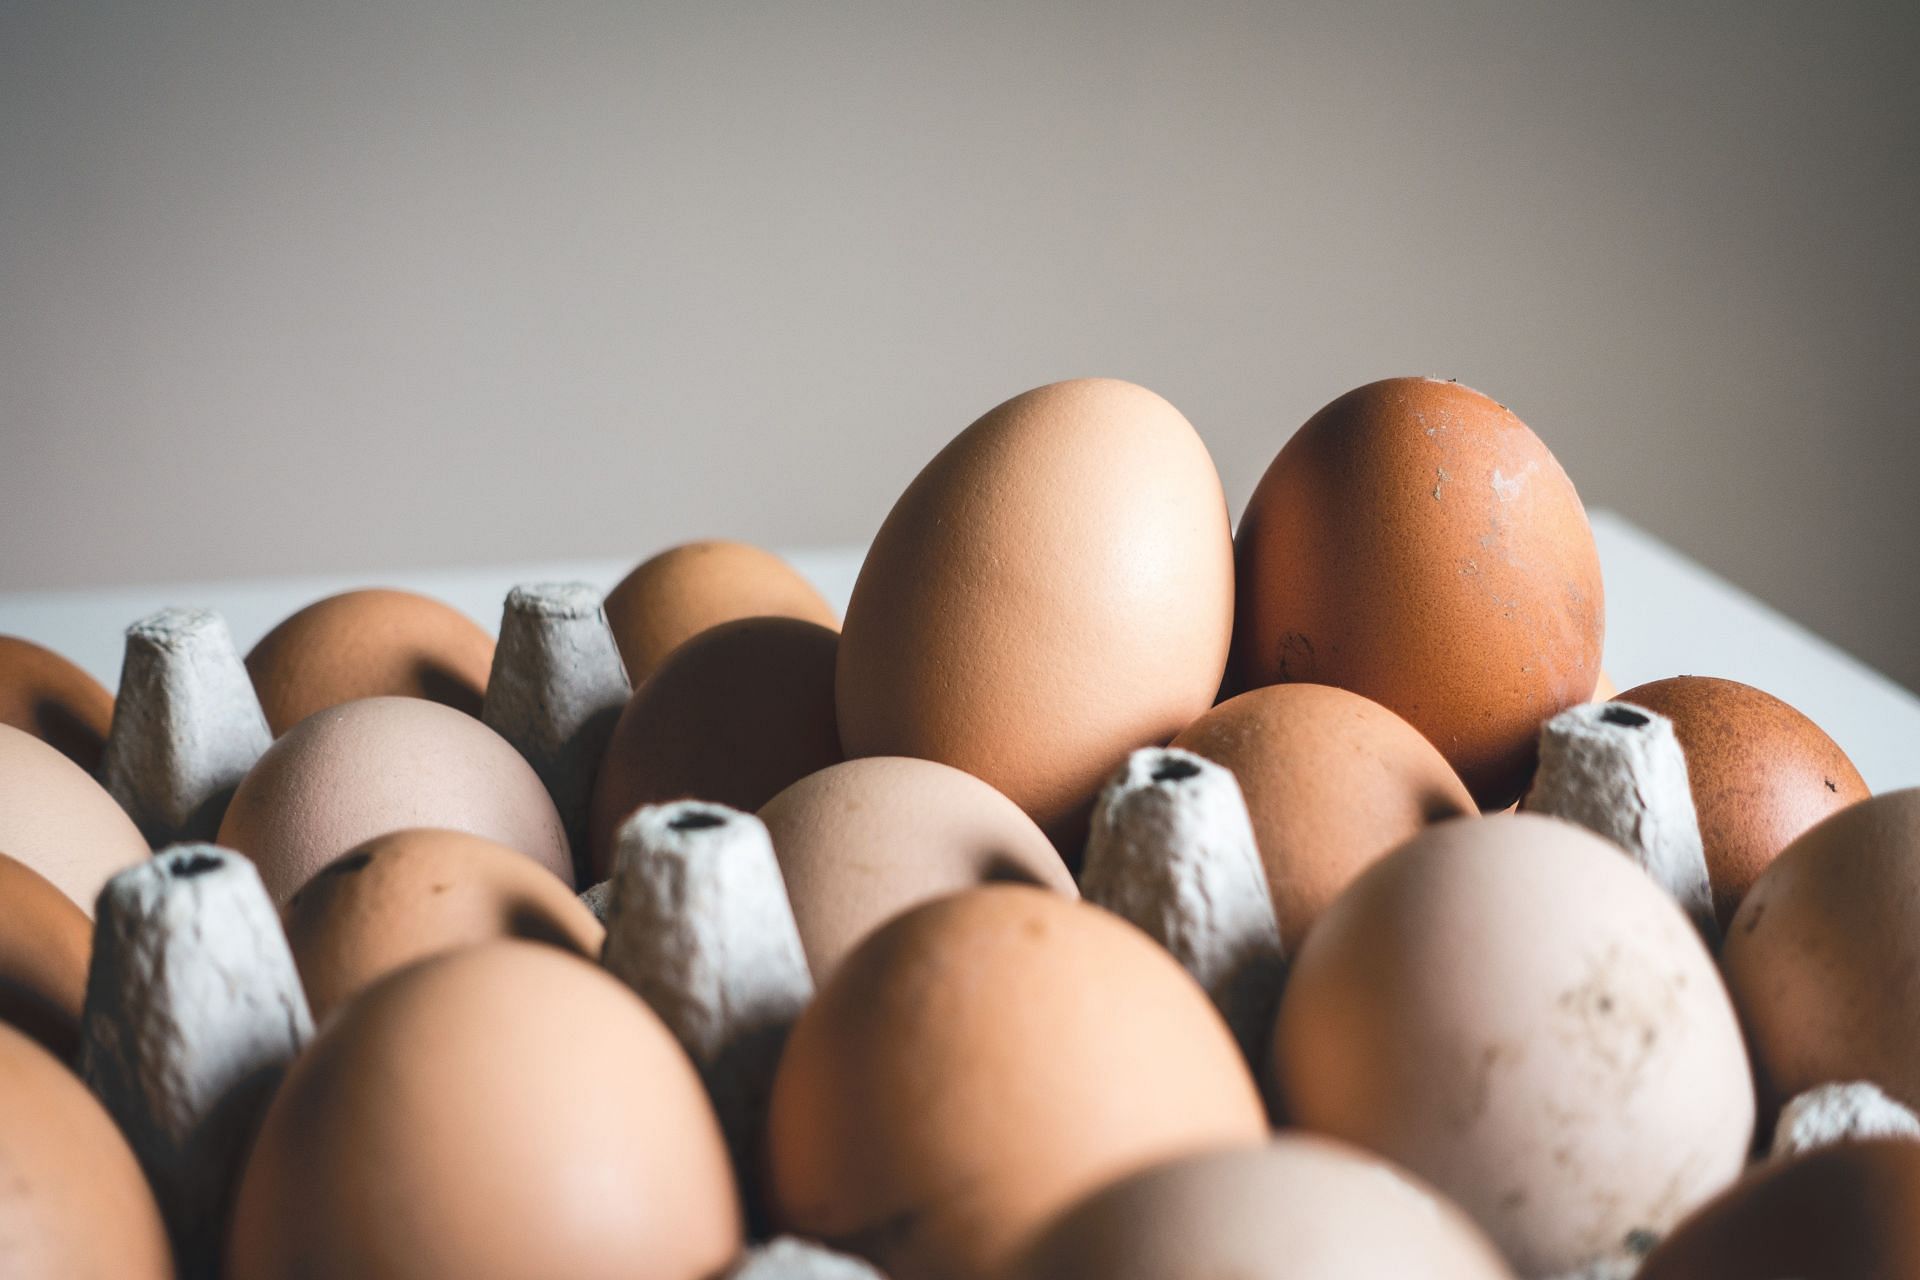 Soft-boiled eggs are a popular breakfast food. (Image via Unsplash/Jakub Kapusnak)